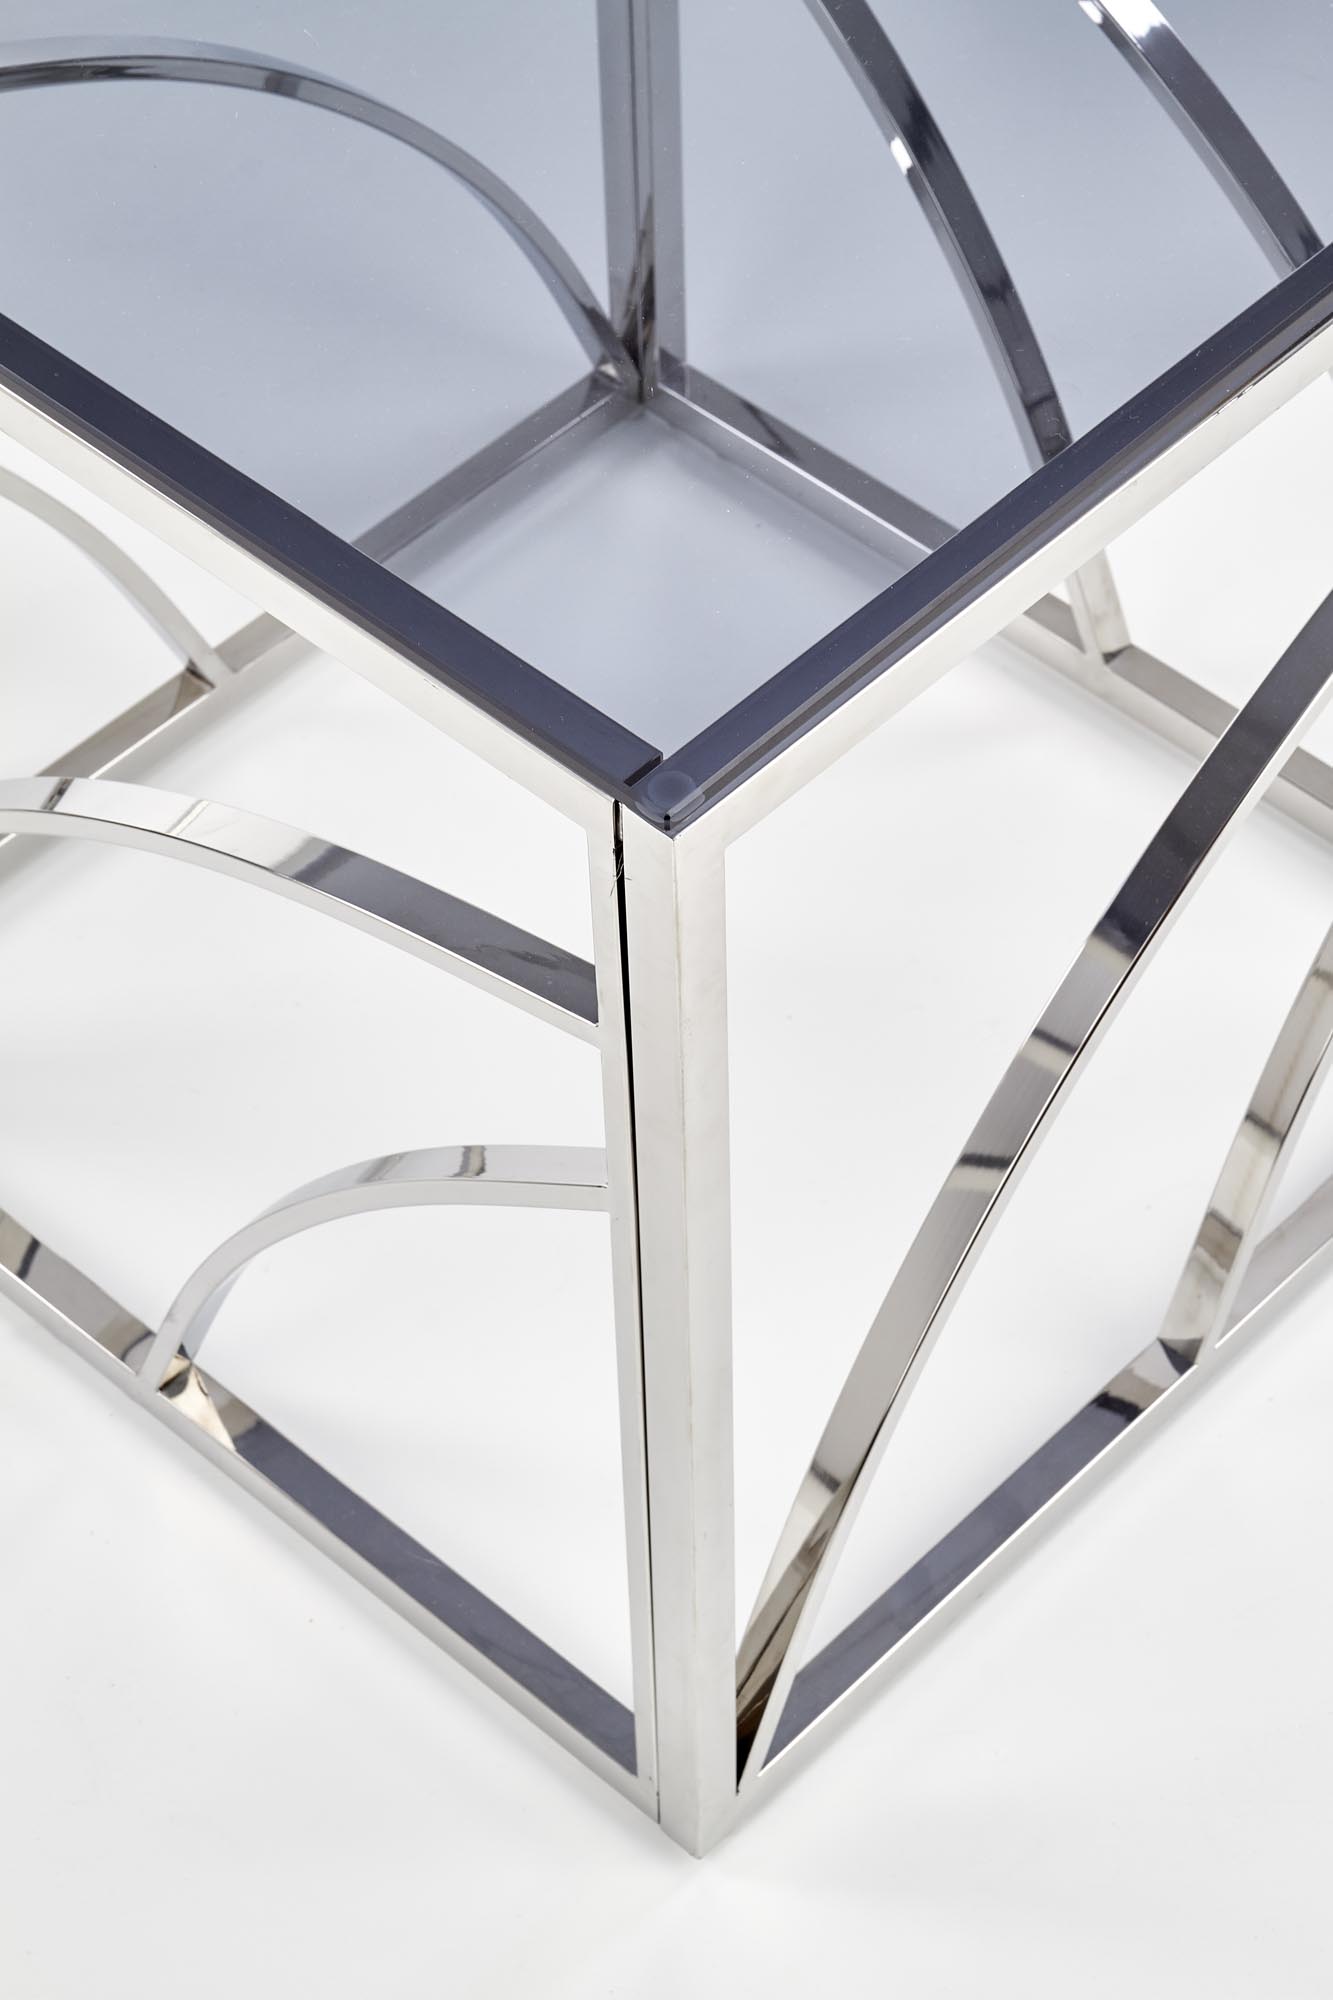 Konferenční stolek krychle Universe - stříbrná / kouřové sklo universe Čtverec Konferenční stolek, Rošt - Stříbrný, Sklo - kouřový